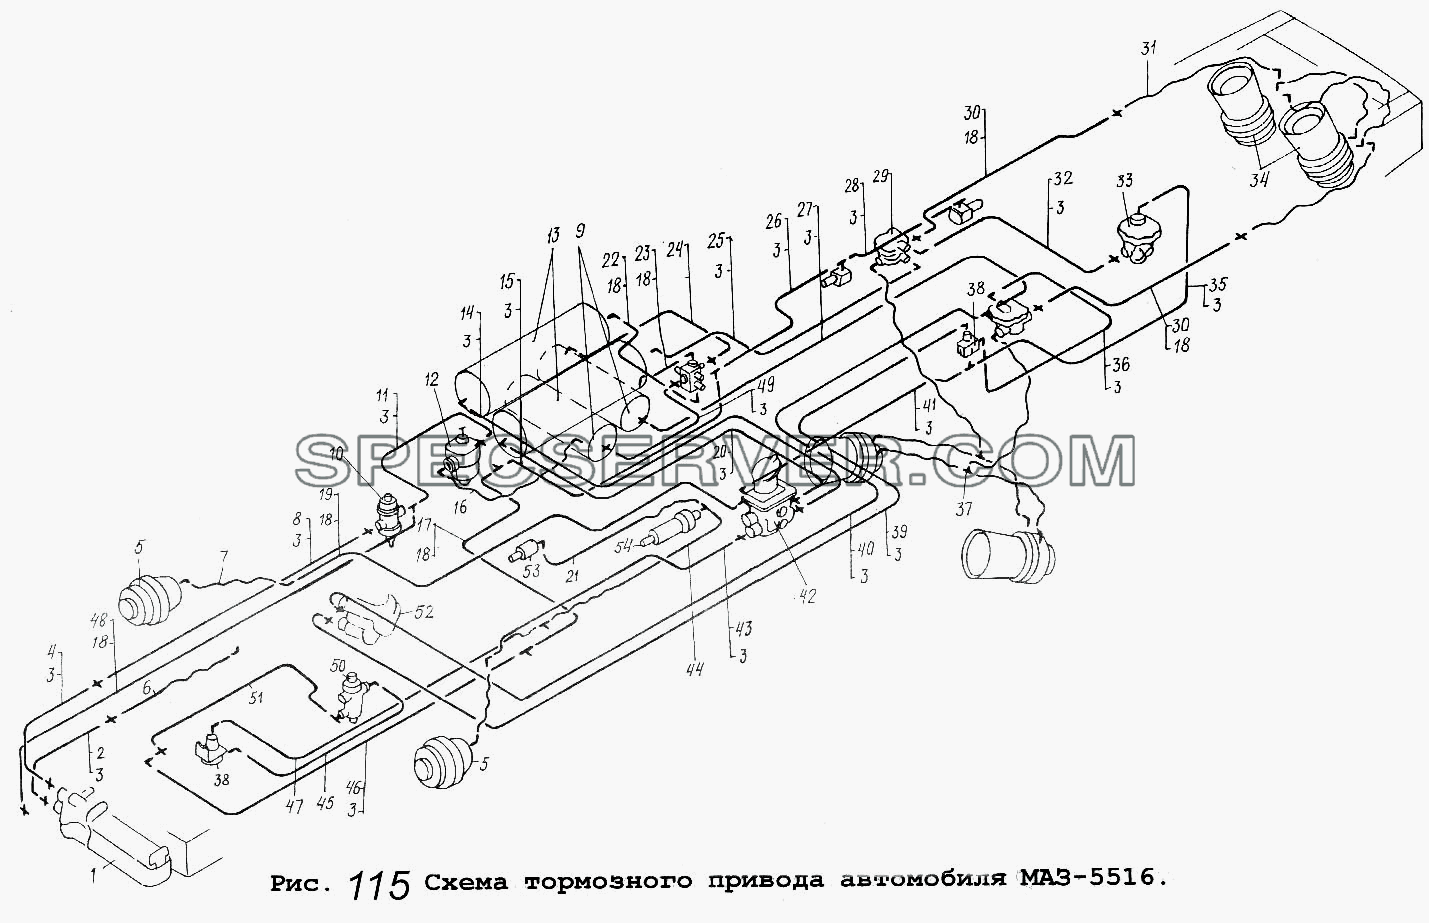 Схема тормозного привода автомобиля МАЗ-5516 для МАЗ-5516 (список запасных частей)